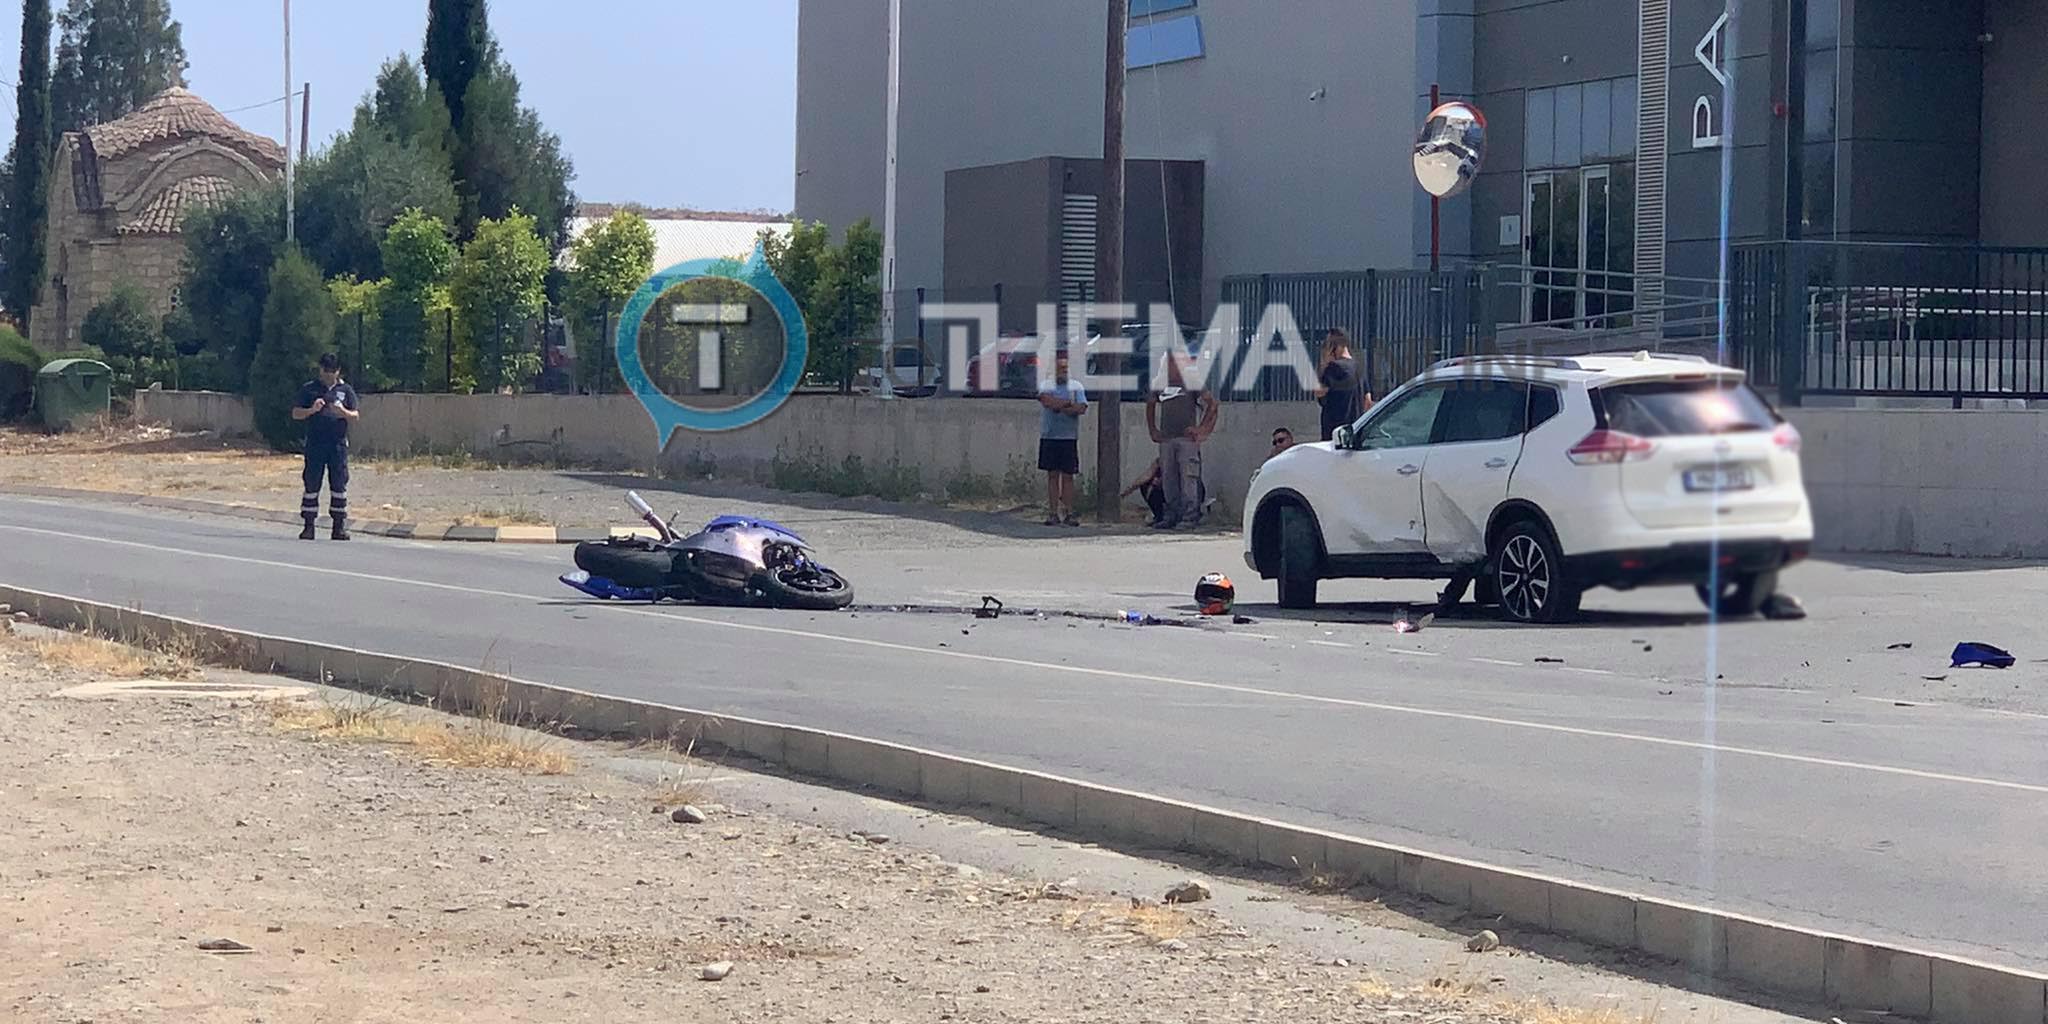 ΚΥΠΡΟΣ - ΤΡΑΓΩΔΙΑ: Νεκρός ο 21χρονος μοτοσικλετιστής, 'έσβησε' στην άσφαλτο -ΦΩΤΟΓΡΑΦΙΑ